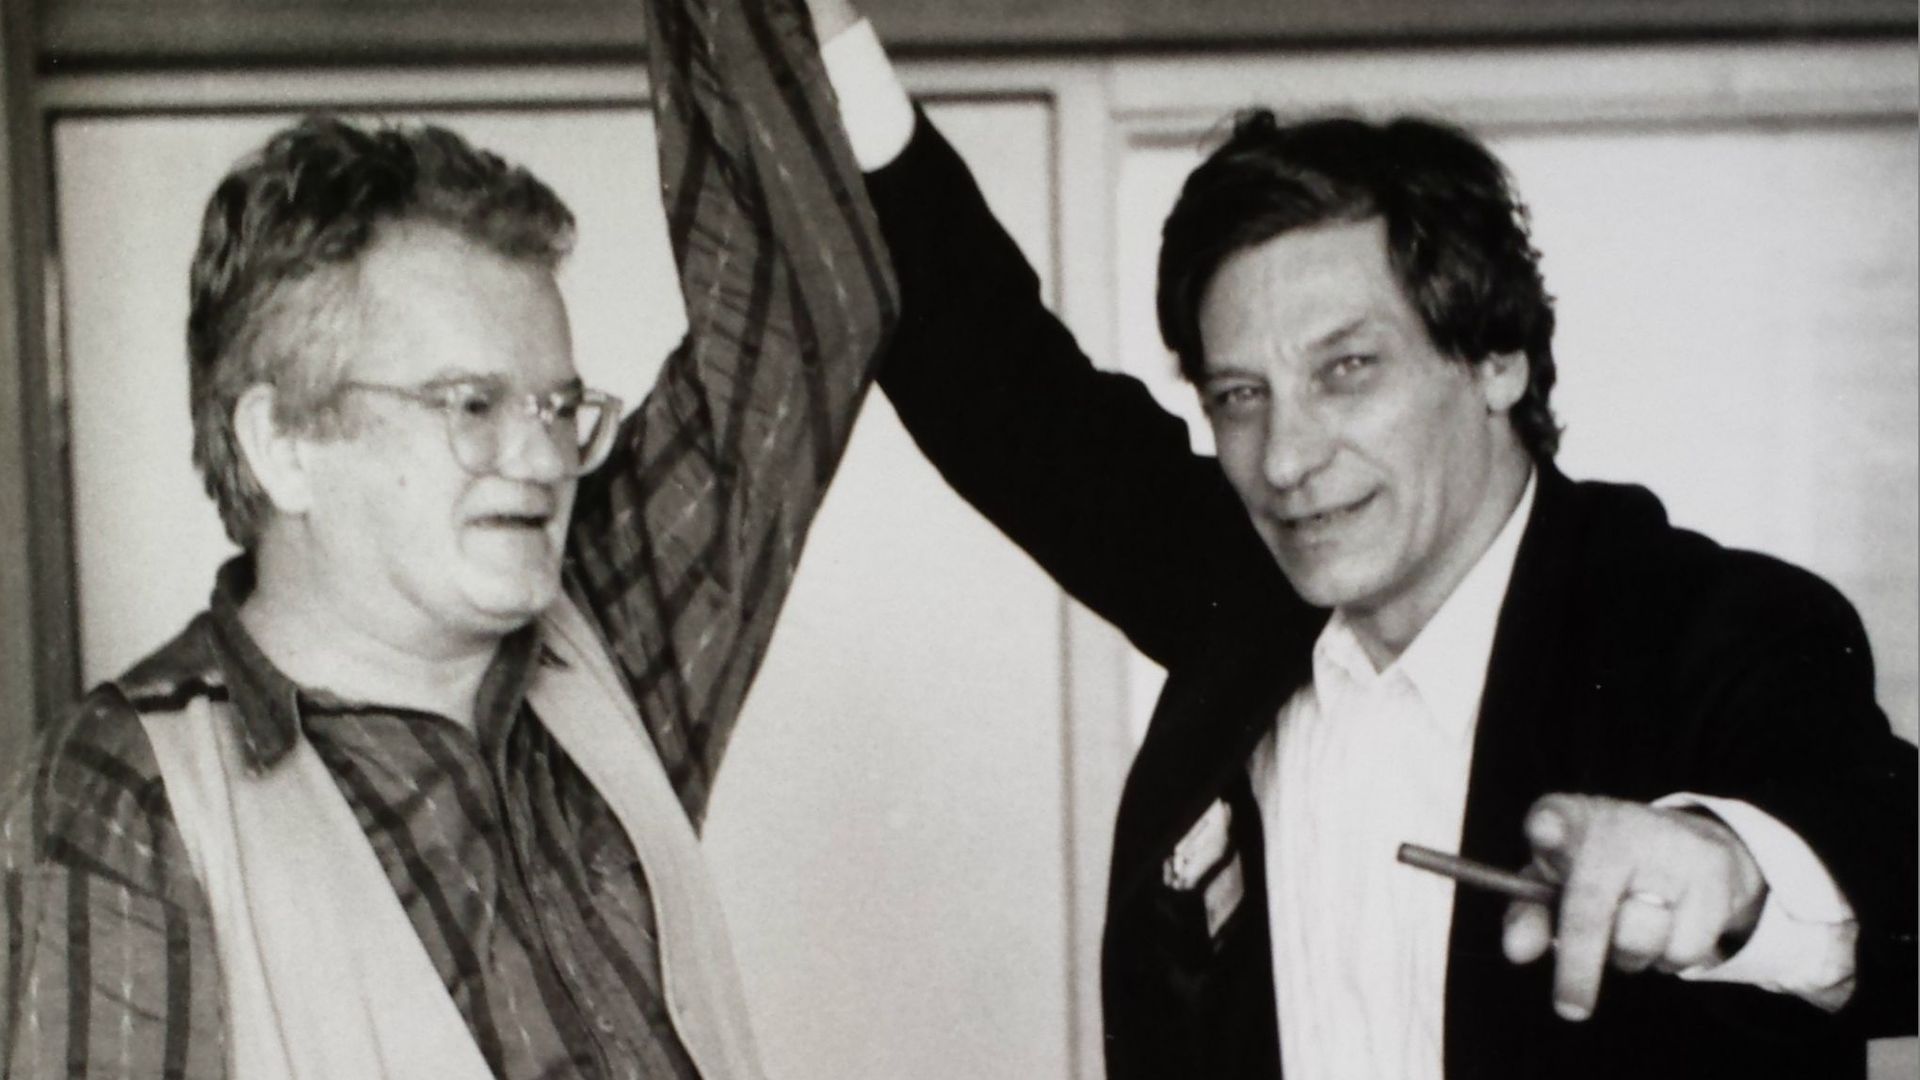 Jean-Pierre Van Tieghem dans les studios de la RTBF en compagnie de Jan Hoet, en juin 1992, juste avant la documenta IX, dont Jan Hoet était le commissaire